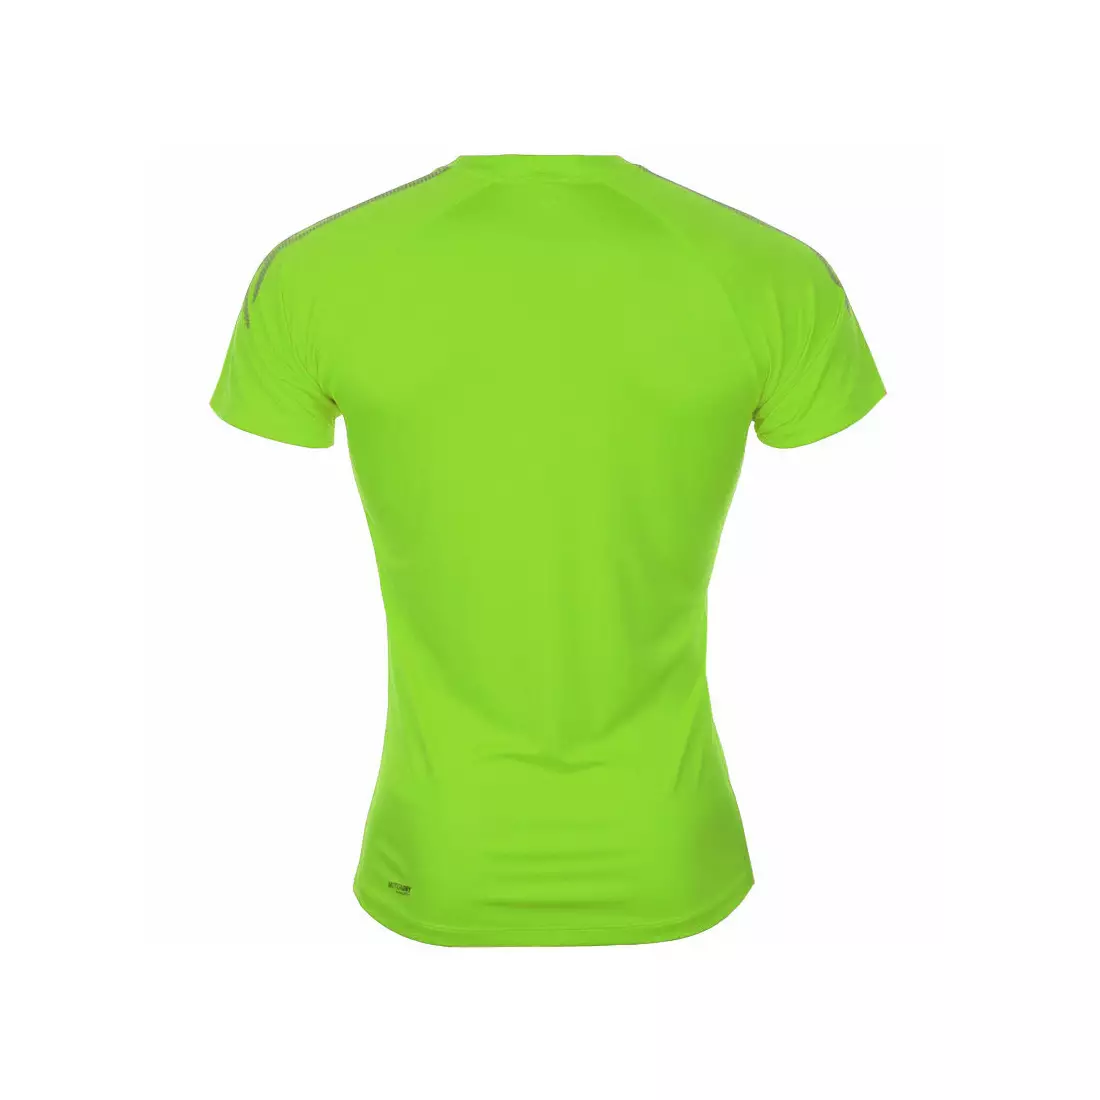 ASICS 339903-0496 - férfi futópóló, színe: zöld